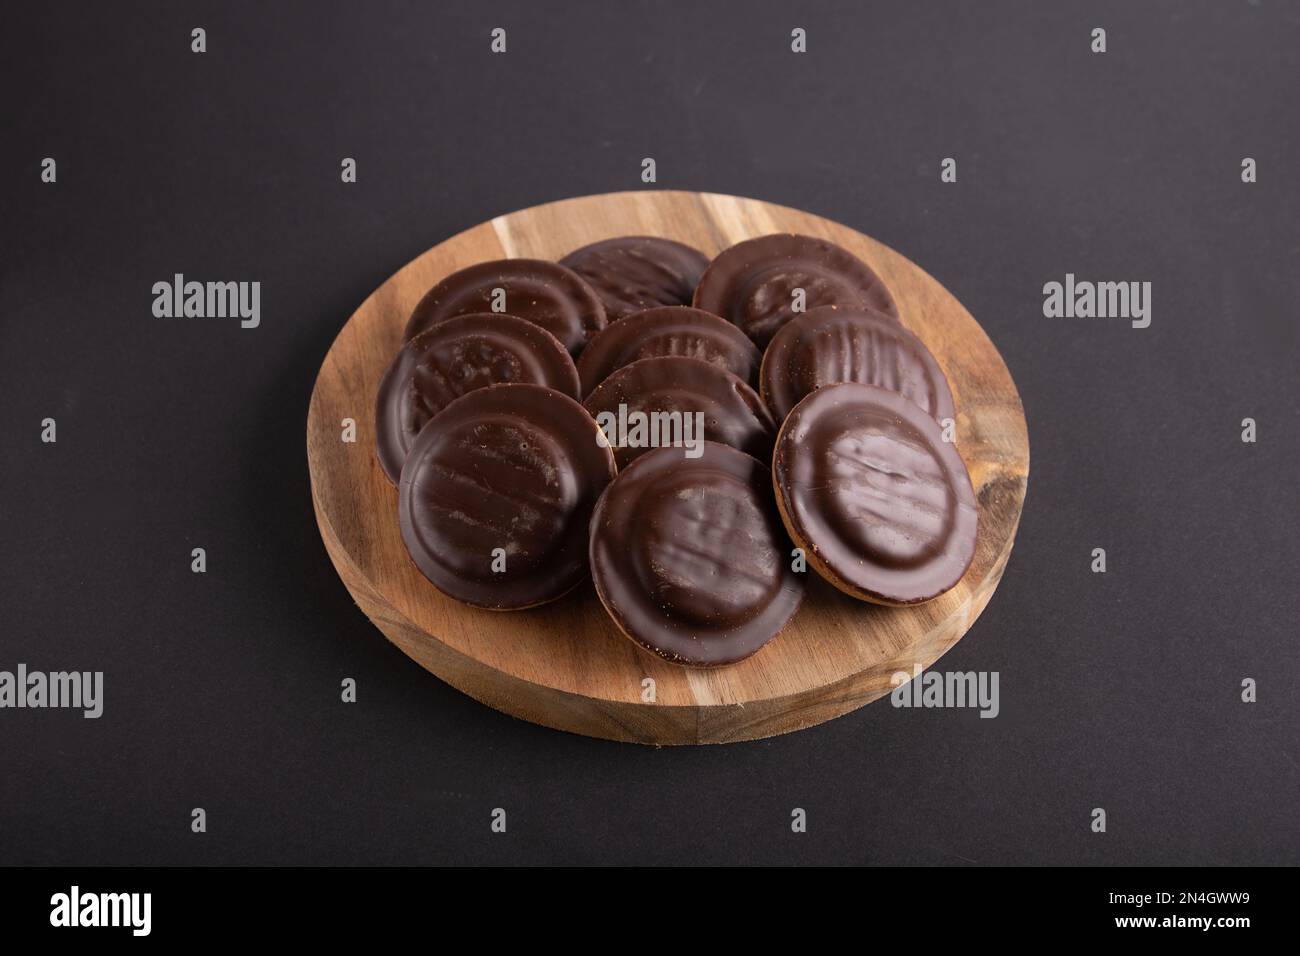 biscotti con scaglie di cioccolato giacenti su un asse di legno su uno sfondo nero Foto Stock